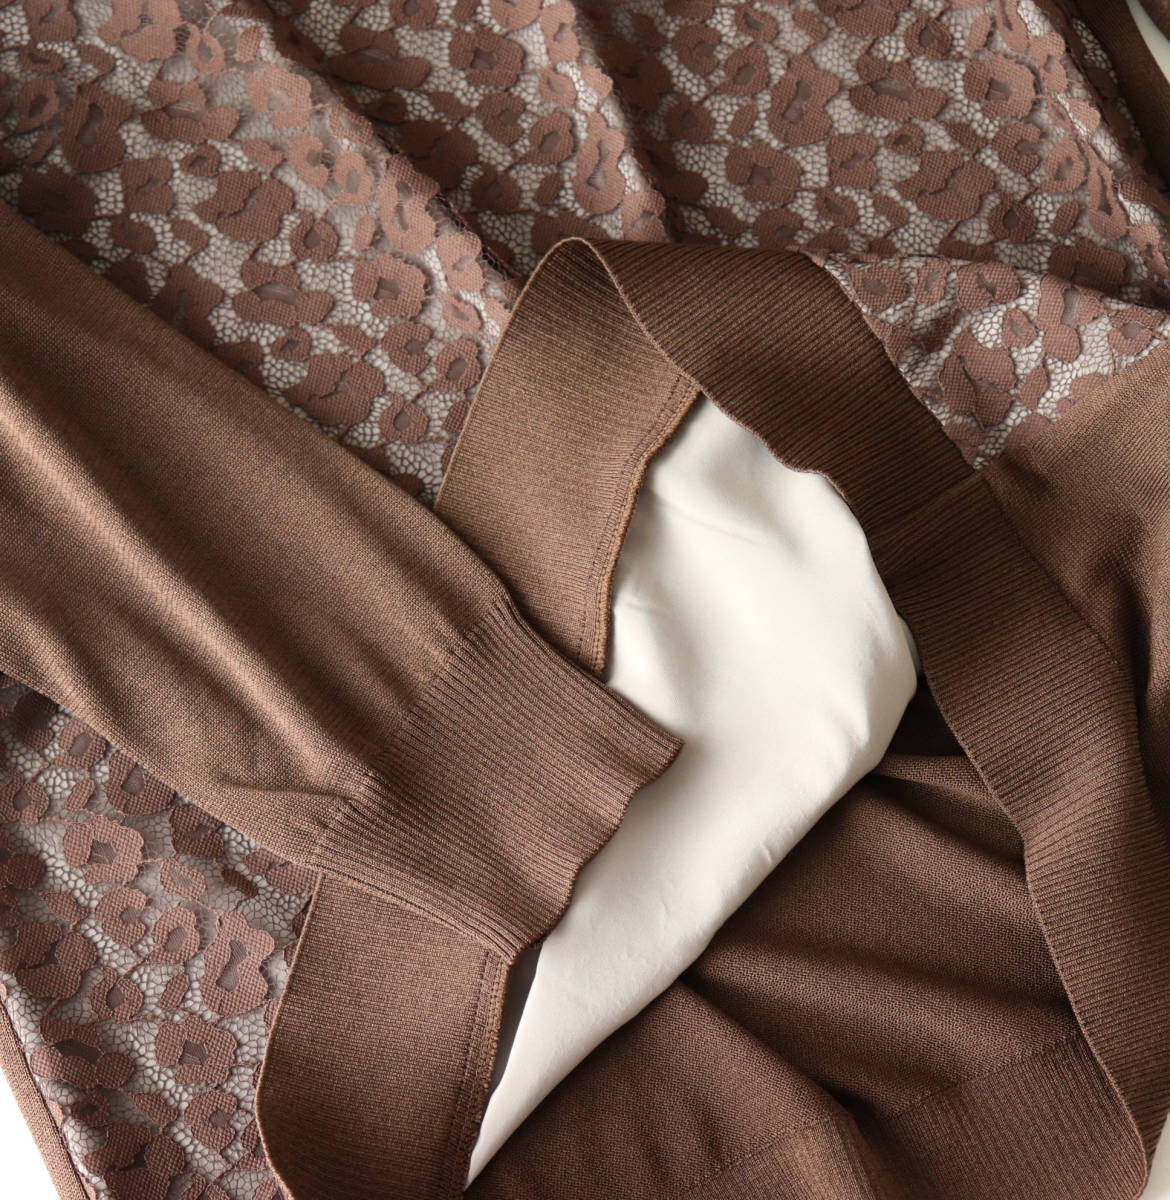 新品【Leilian レリアン】繊細綺麗なフロントレース刺繍 チュニック丈 セーター ニット 17+ 大きいサイズ v3741